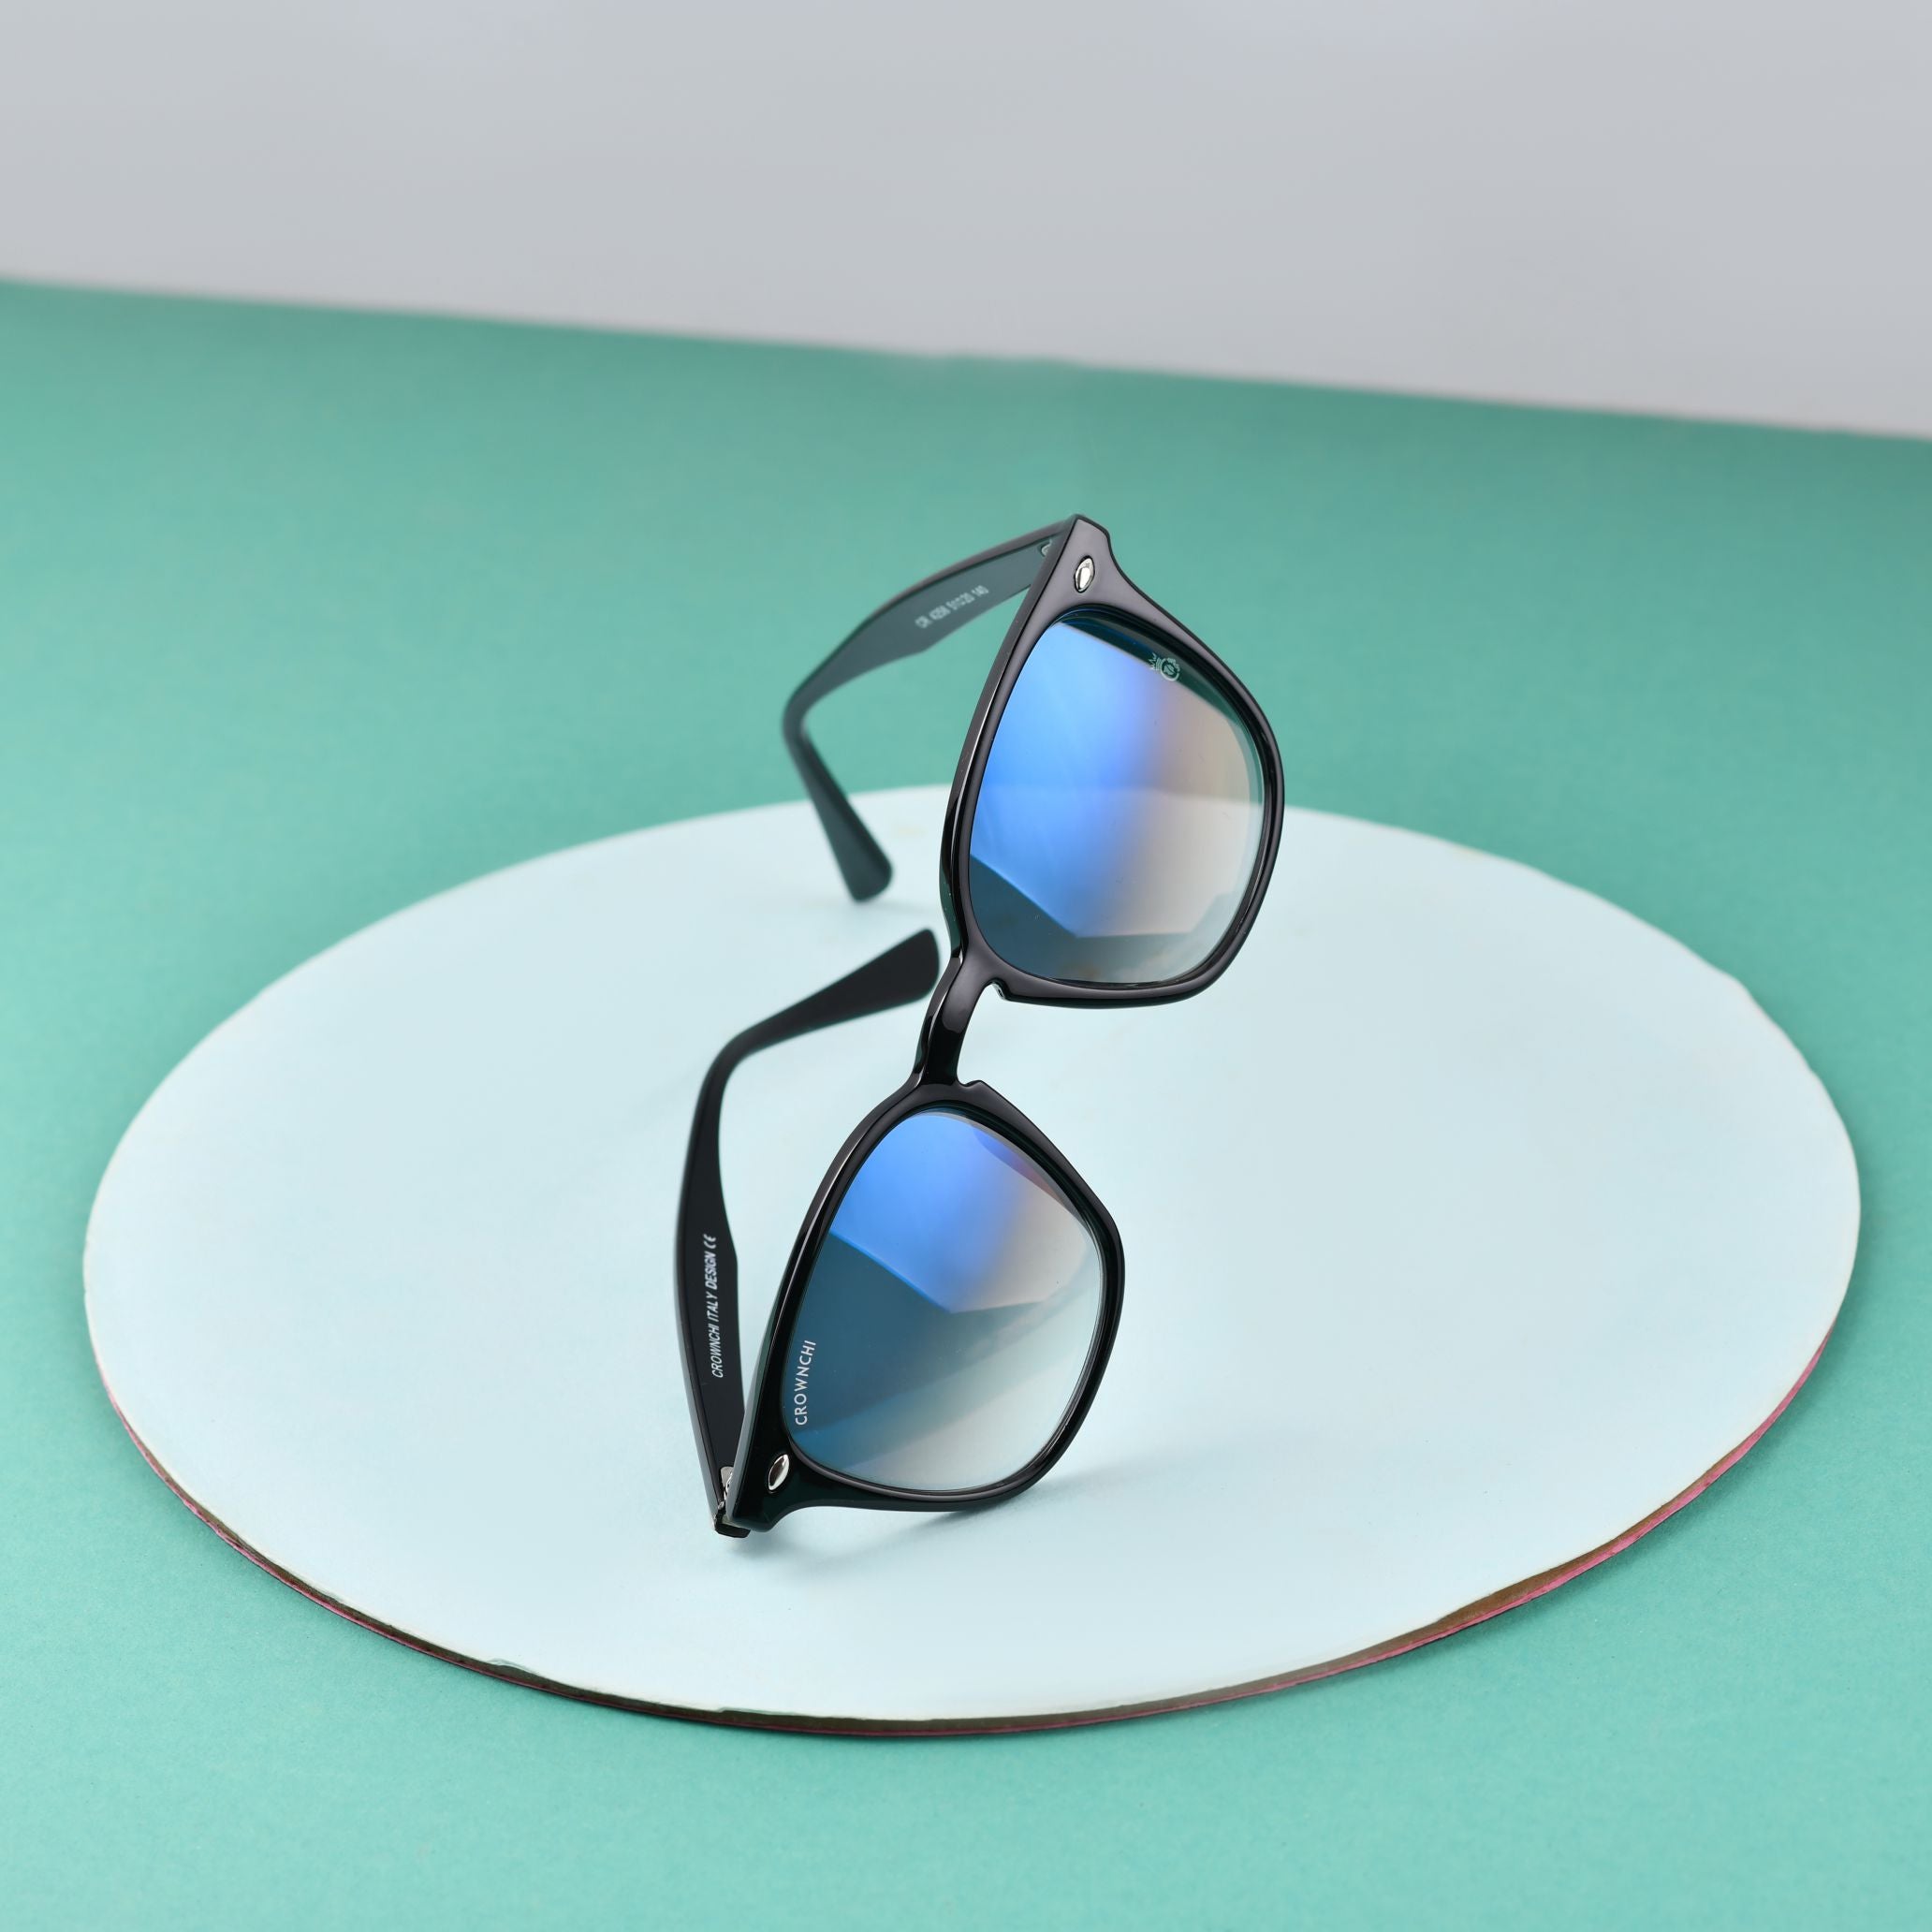 Asgard Black Blue Gradient Square Edition Sunglasses